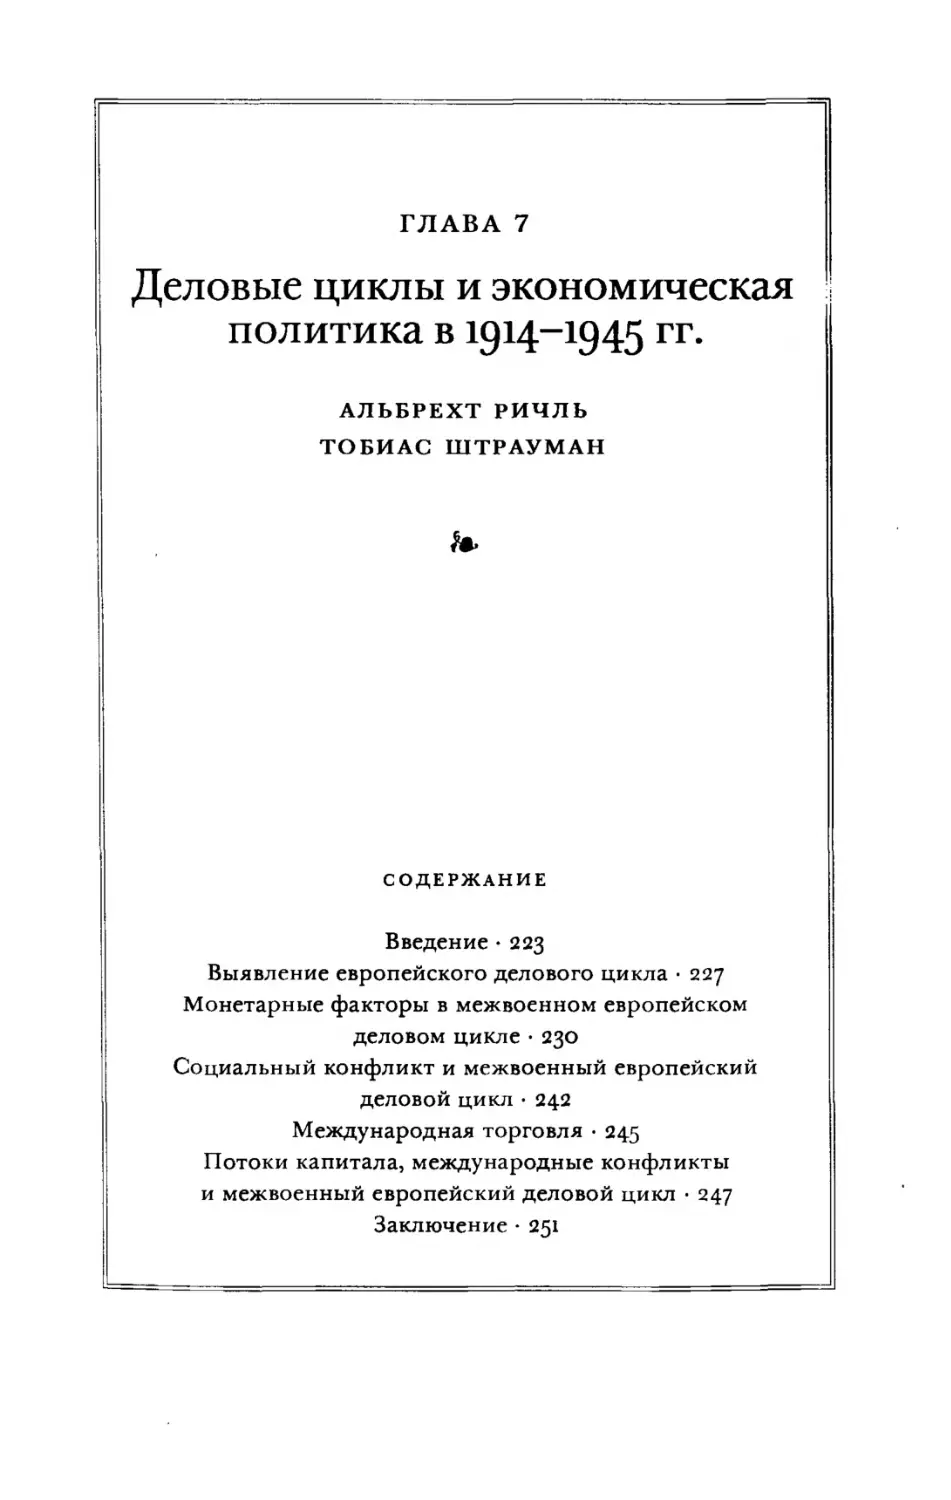 Глава 7. Деловые циклы и экономическая политика в 1914-1945 гг.